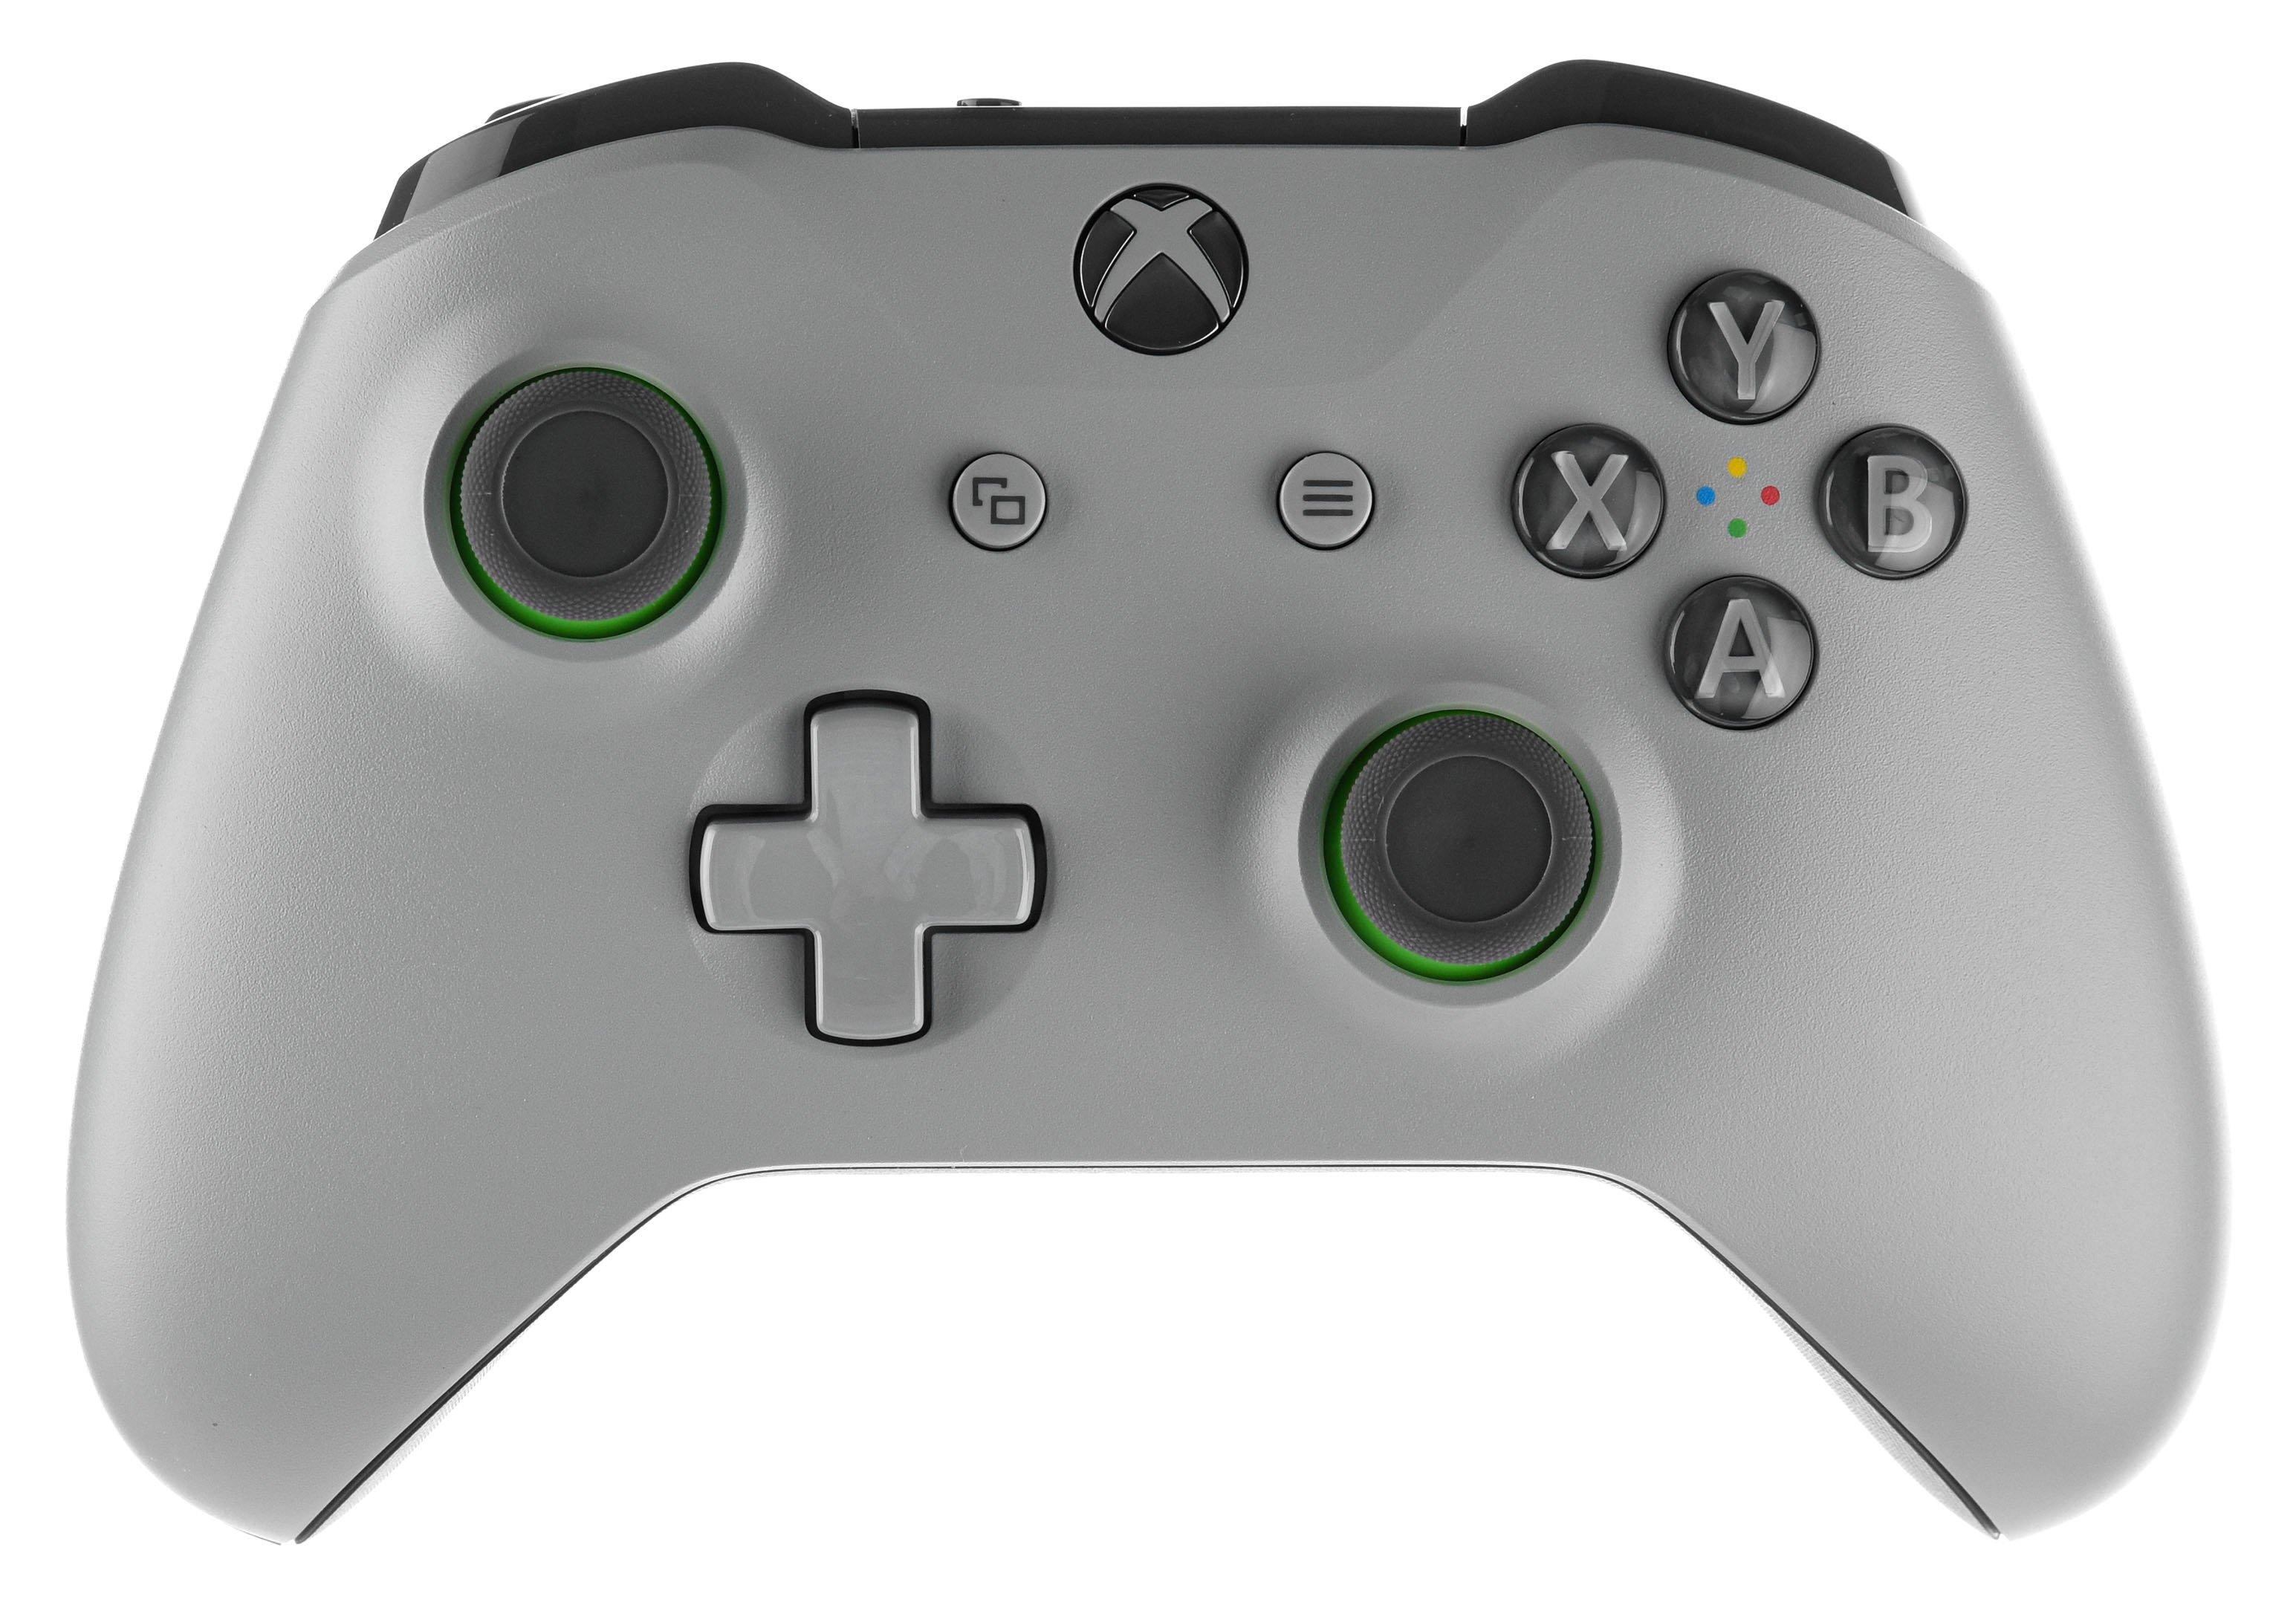 xbox controller grey green